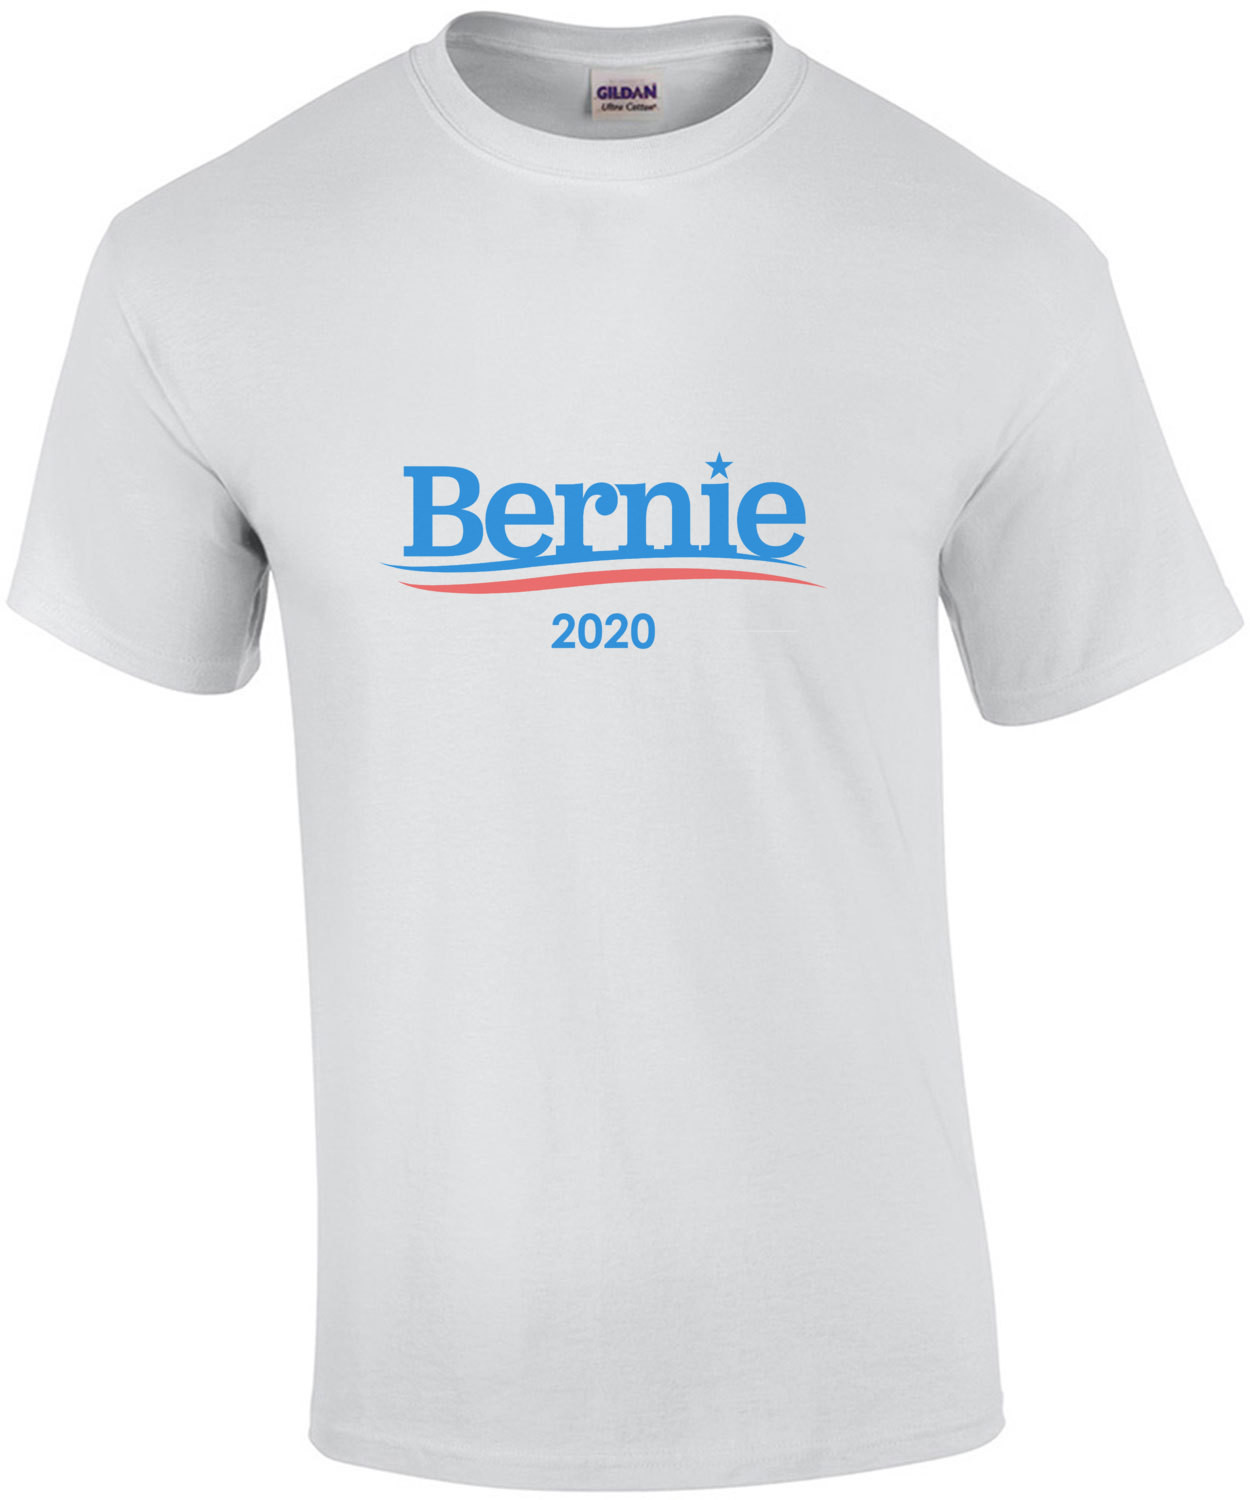 Bernie Sanders 2020 Presidential T-Shirt